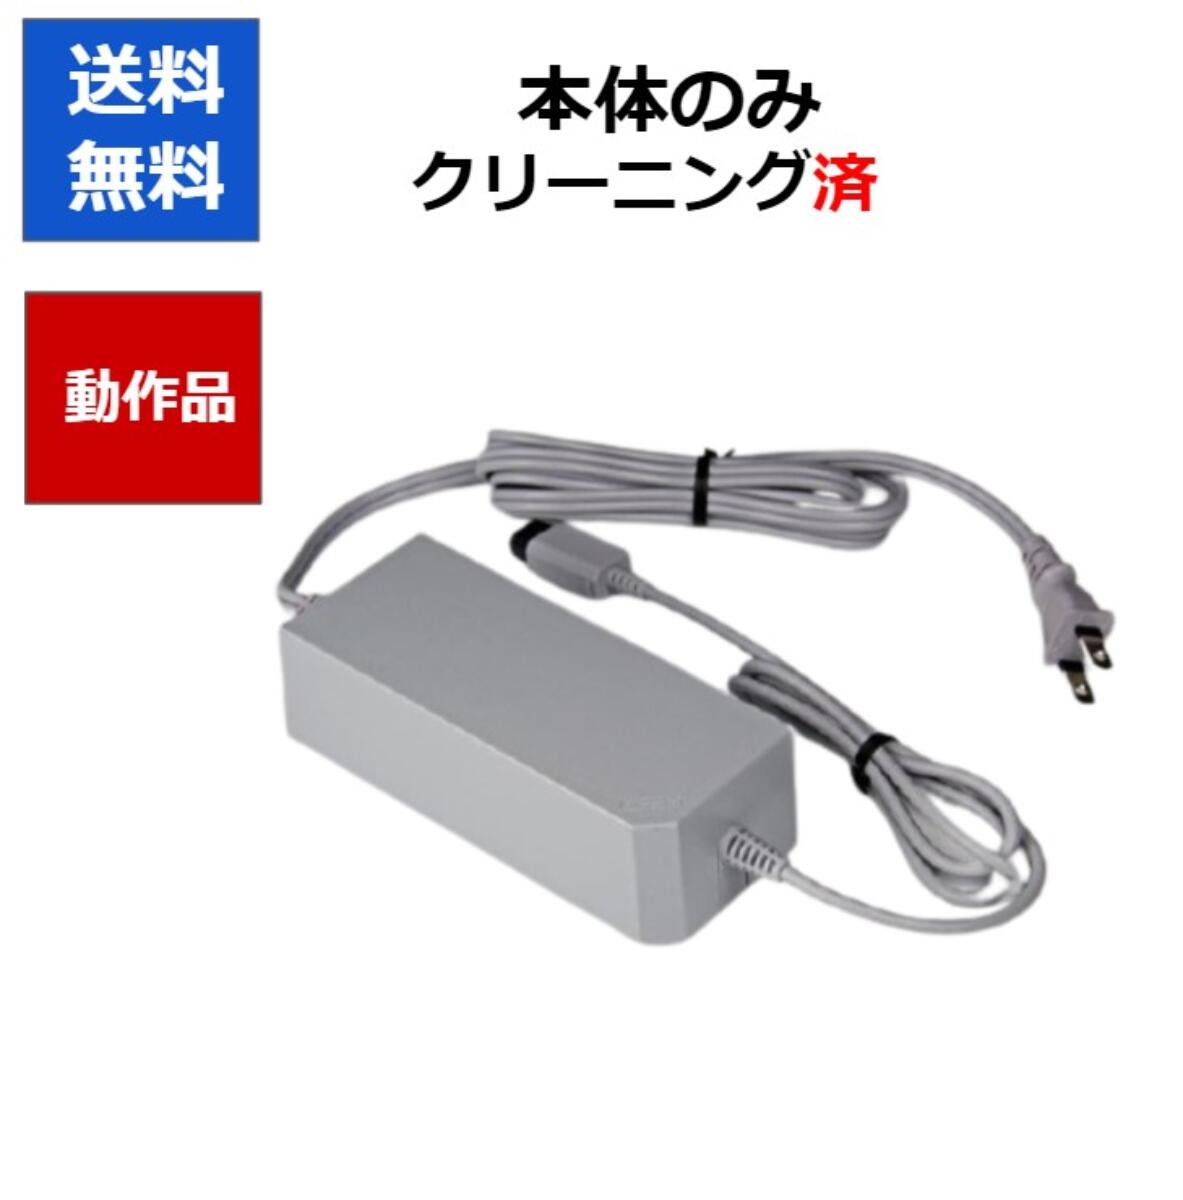 Wii ACアダプタ 電源コード ケーブル 任天堂 純正